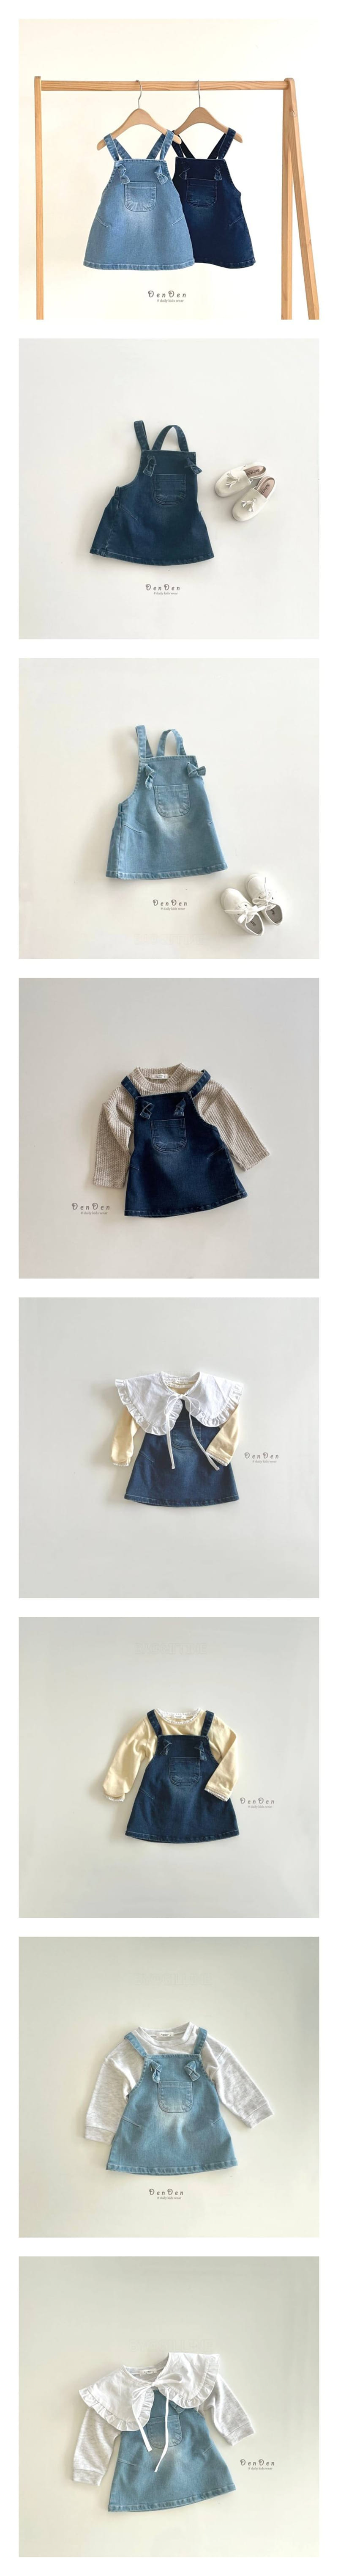 Denden - Korean Children Fashion - #fashionkids - Bonbon Dungarees Denim Skirt